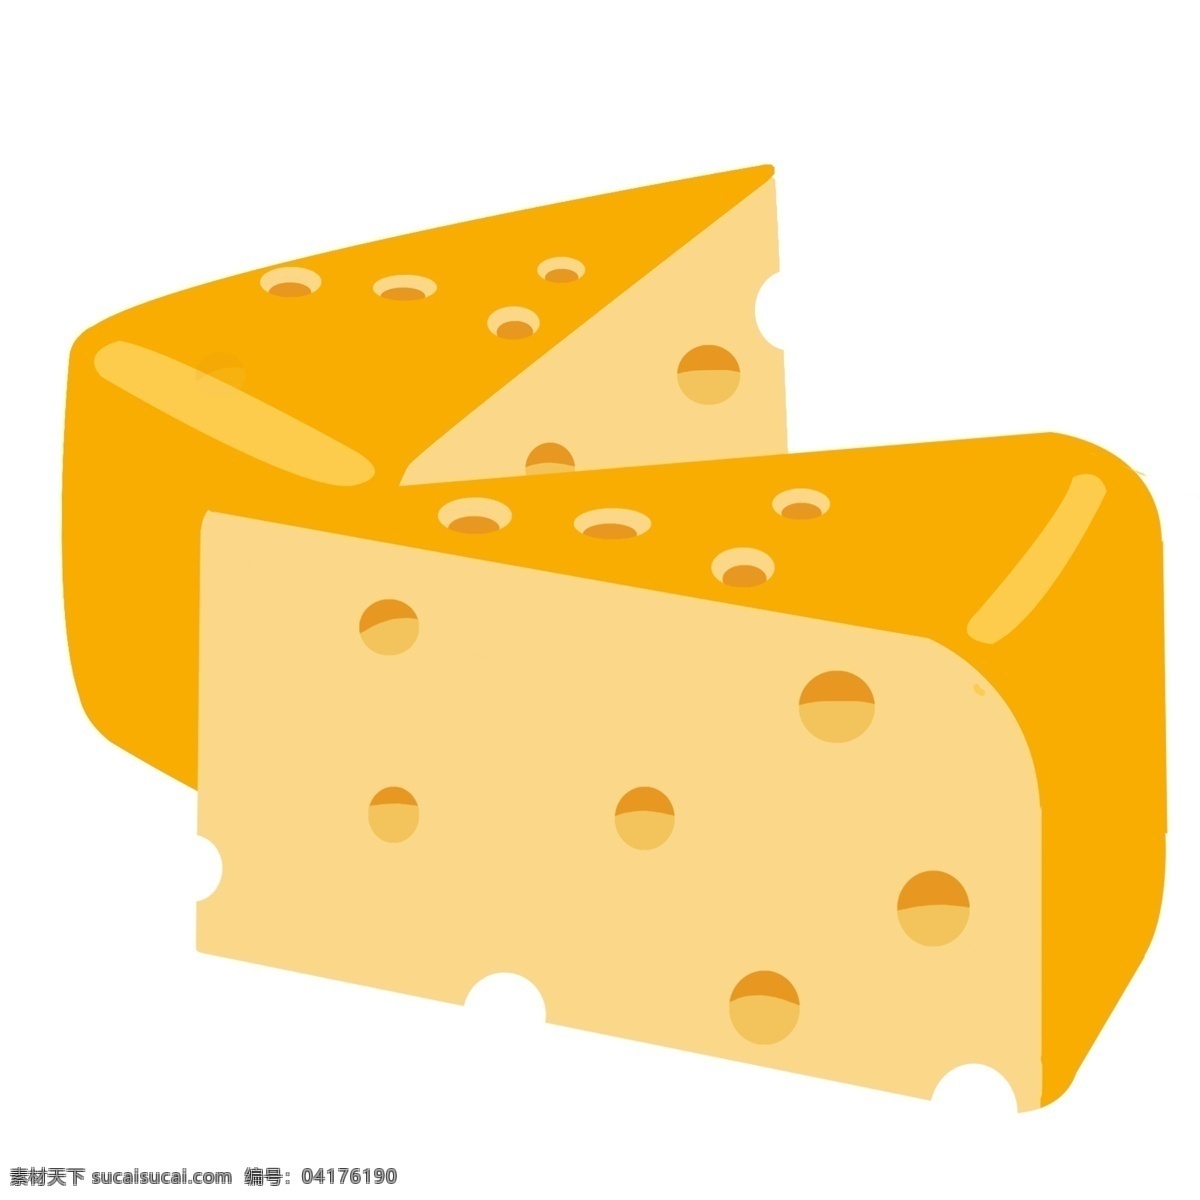 手绘 美食 奶酪 插画 黄色奶酪 营养 健康 美味 食品 食材 奶酪插画 手绘奶酪 美味香甜